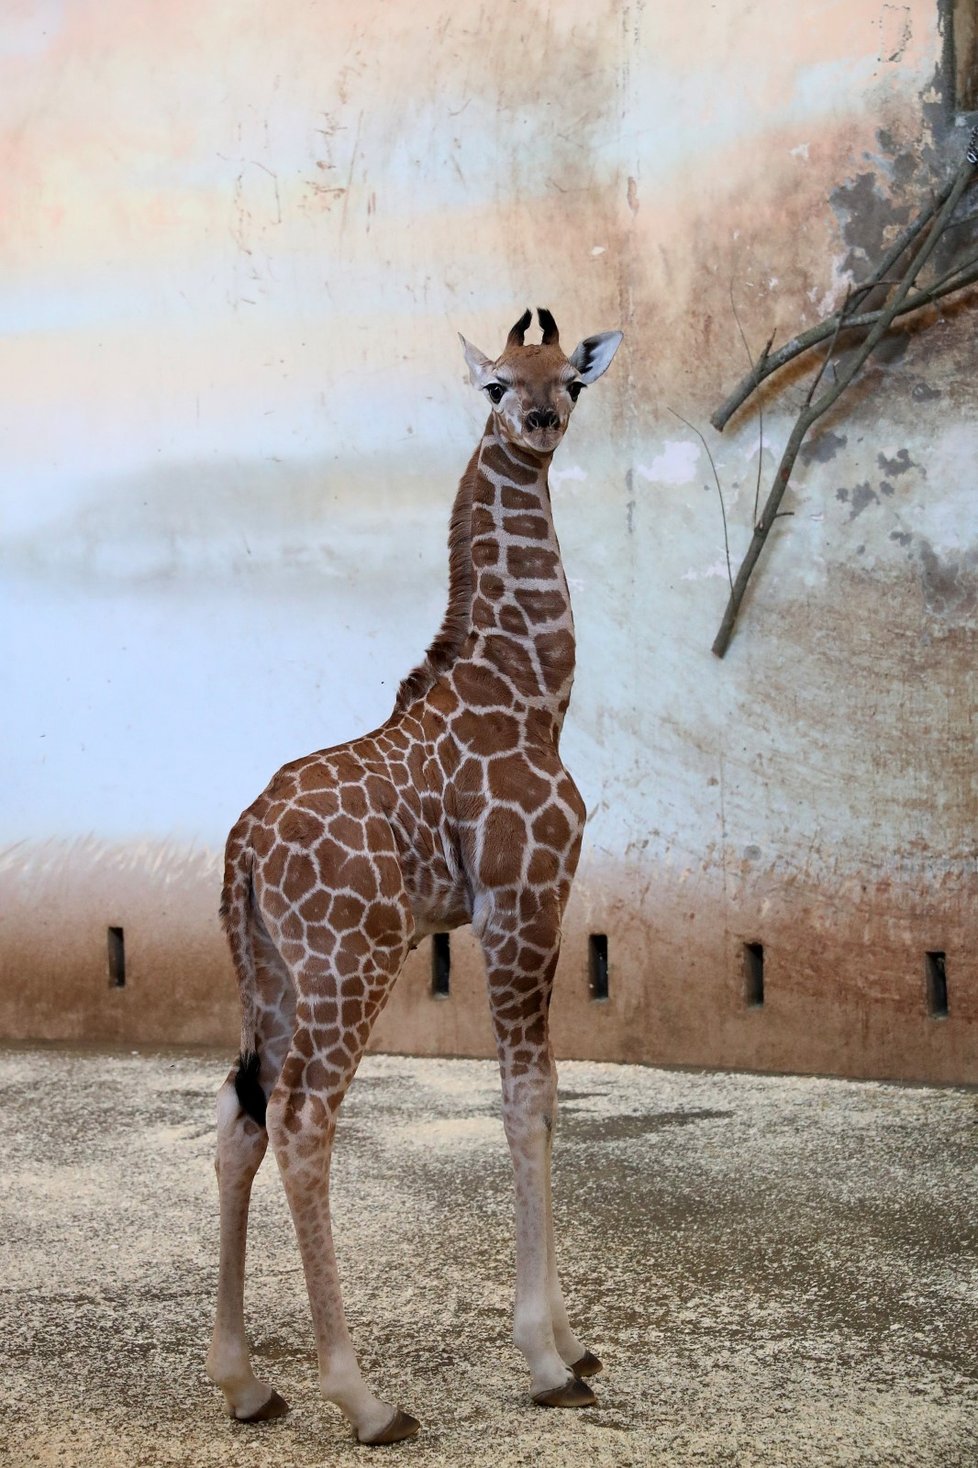 Žirafí sameček se narodil Elišce 13. února 2019. V pondělí 25. února se připojil ke stádu.